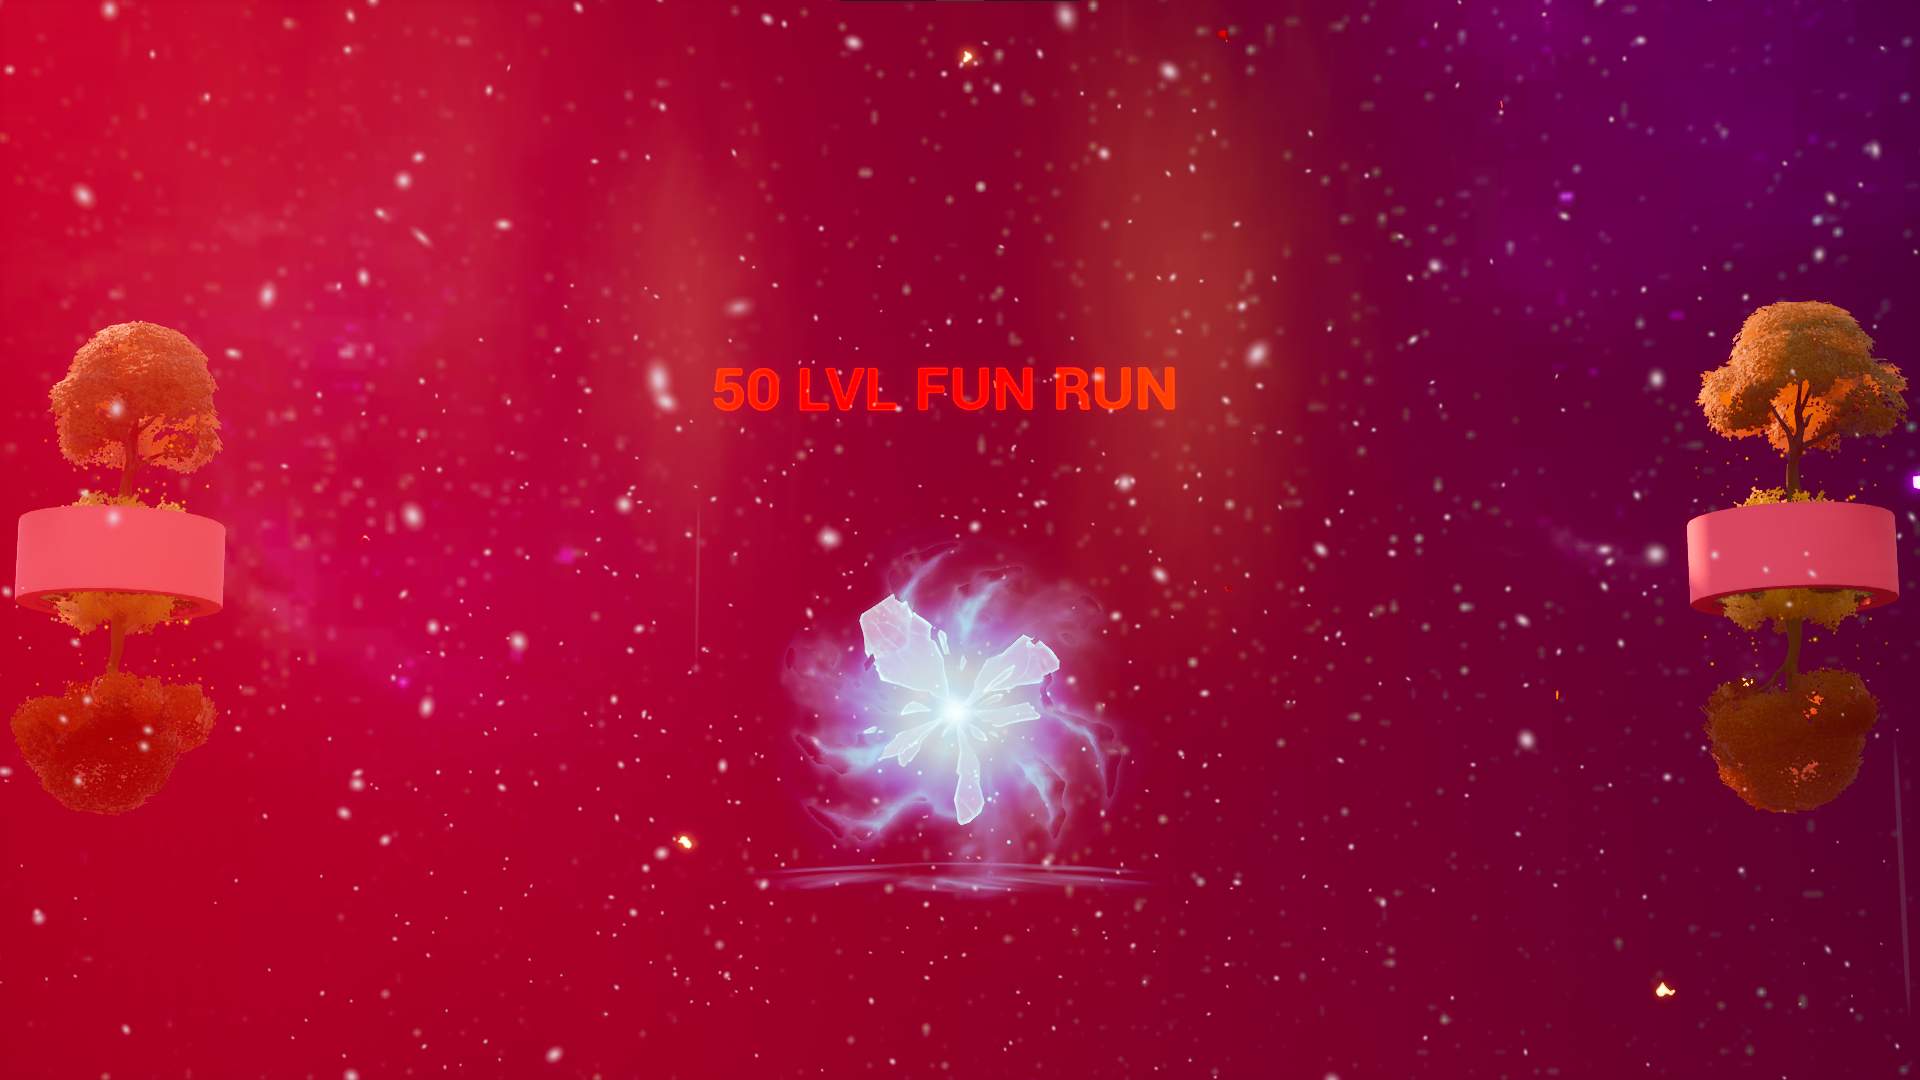 30 lvl Fun Run